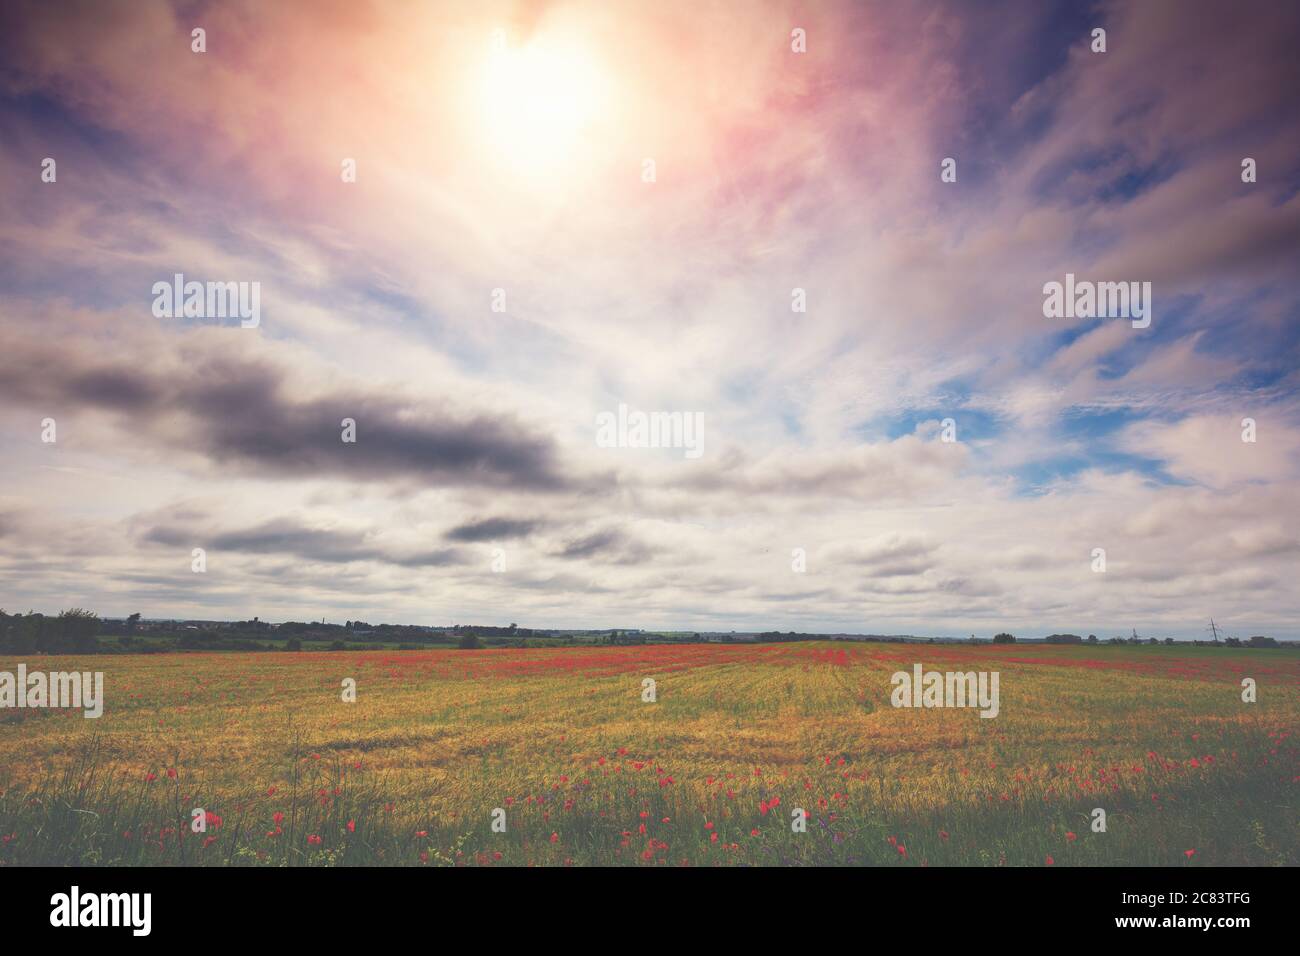 Paesaggio agricolo con un cielo nuvoloso drammatico. Wheatfield con papaveri in fiore Foto Stock